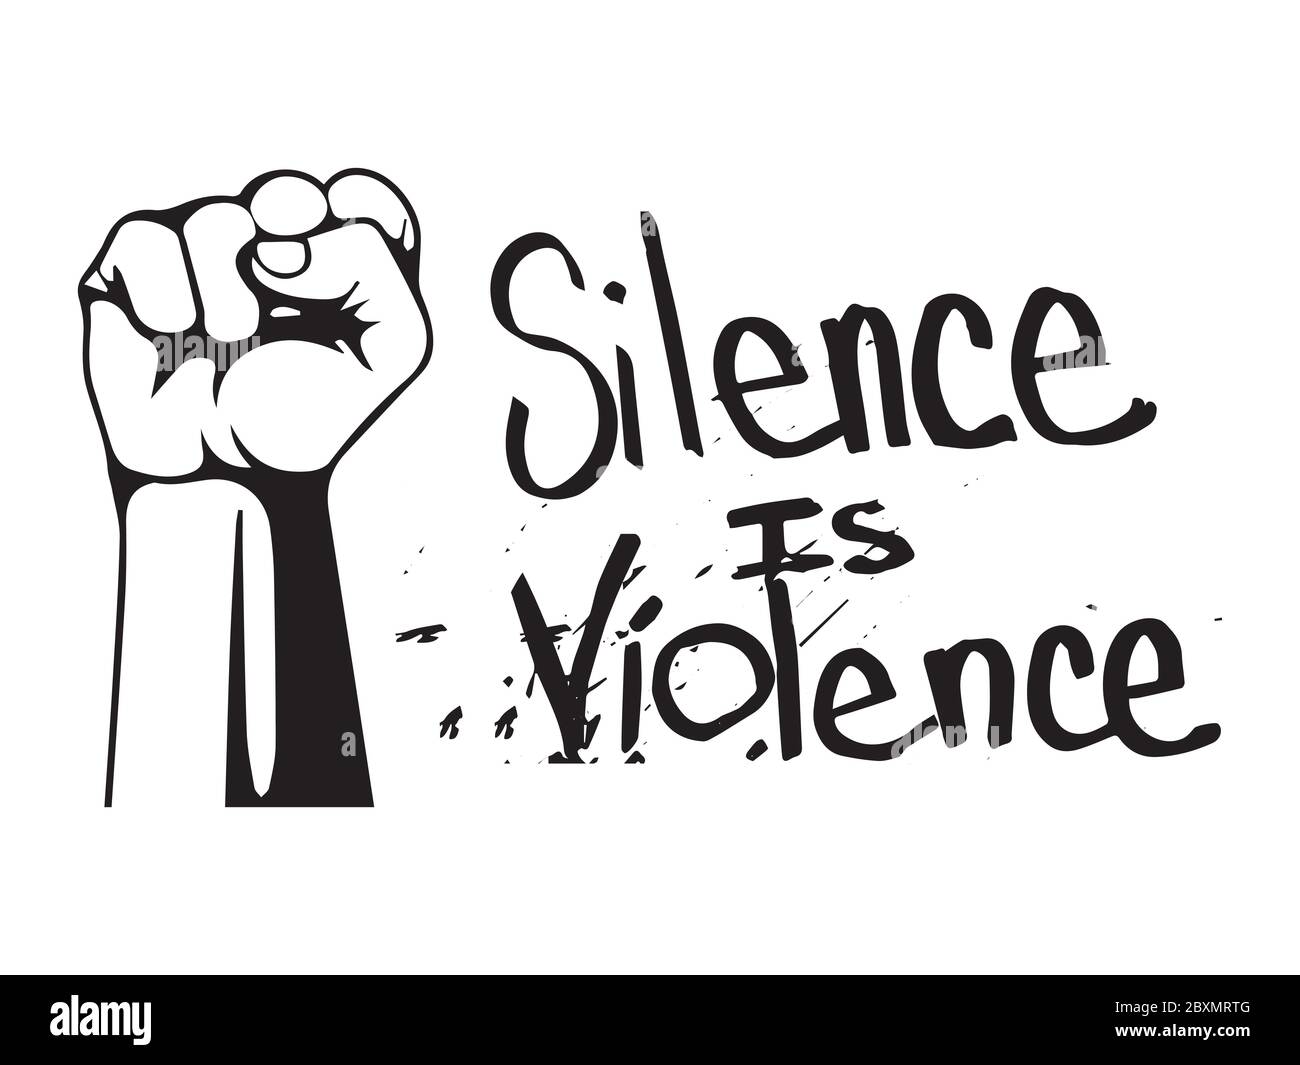 Schweigen ist Gewalt mit Faust. Piktogramm Illustration Darstellung Stille ist Gewalt Text. BLM Schwarze Leben sind wichtig. Schwarz-weiße EPS-Vektordatei. Stock Vektor